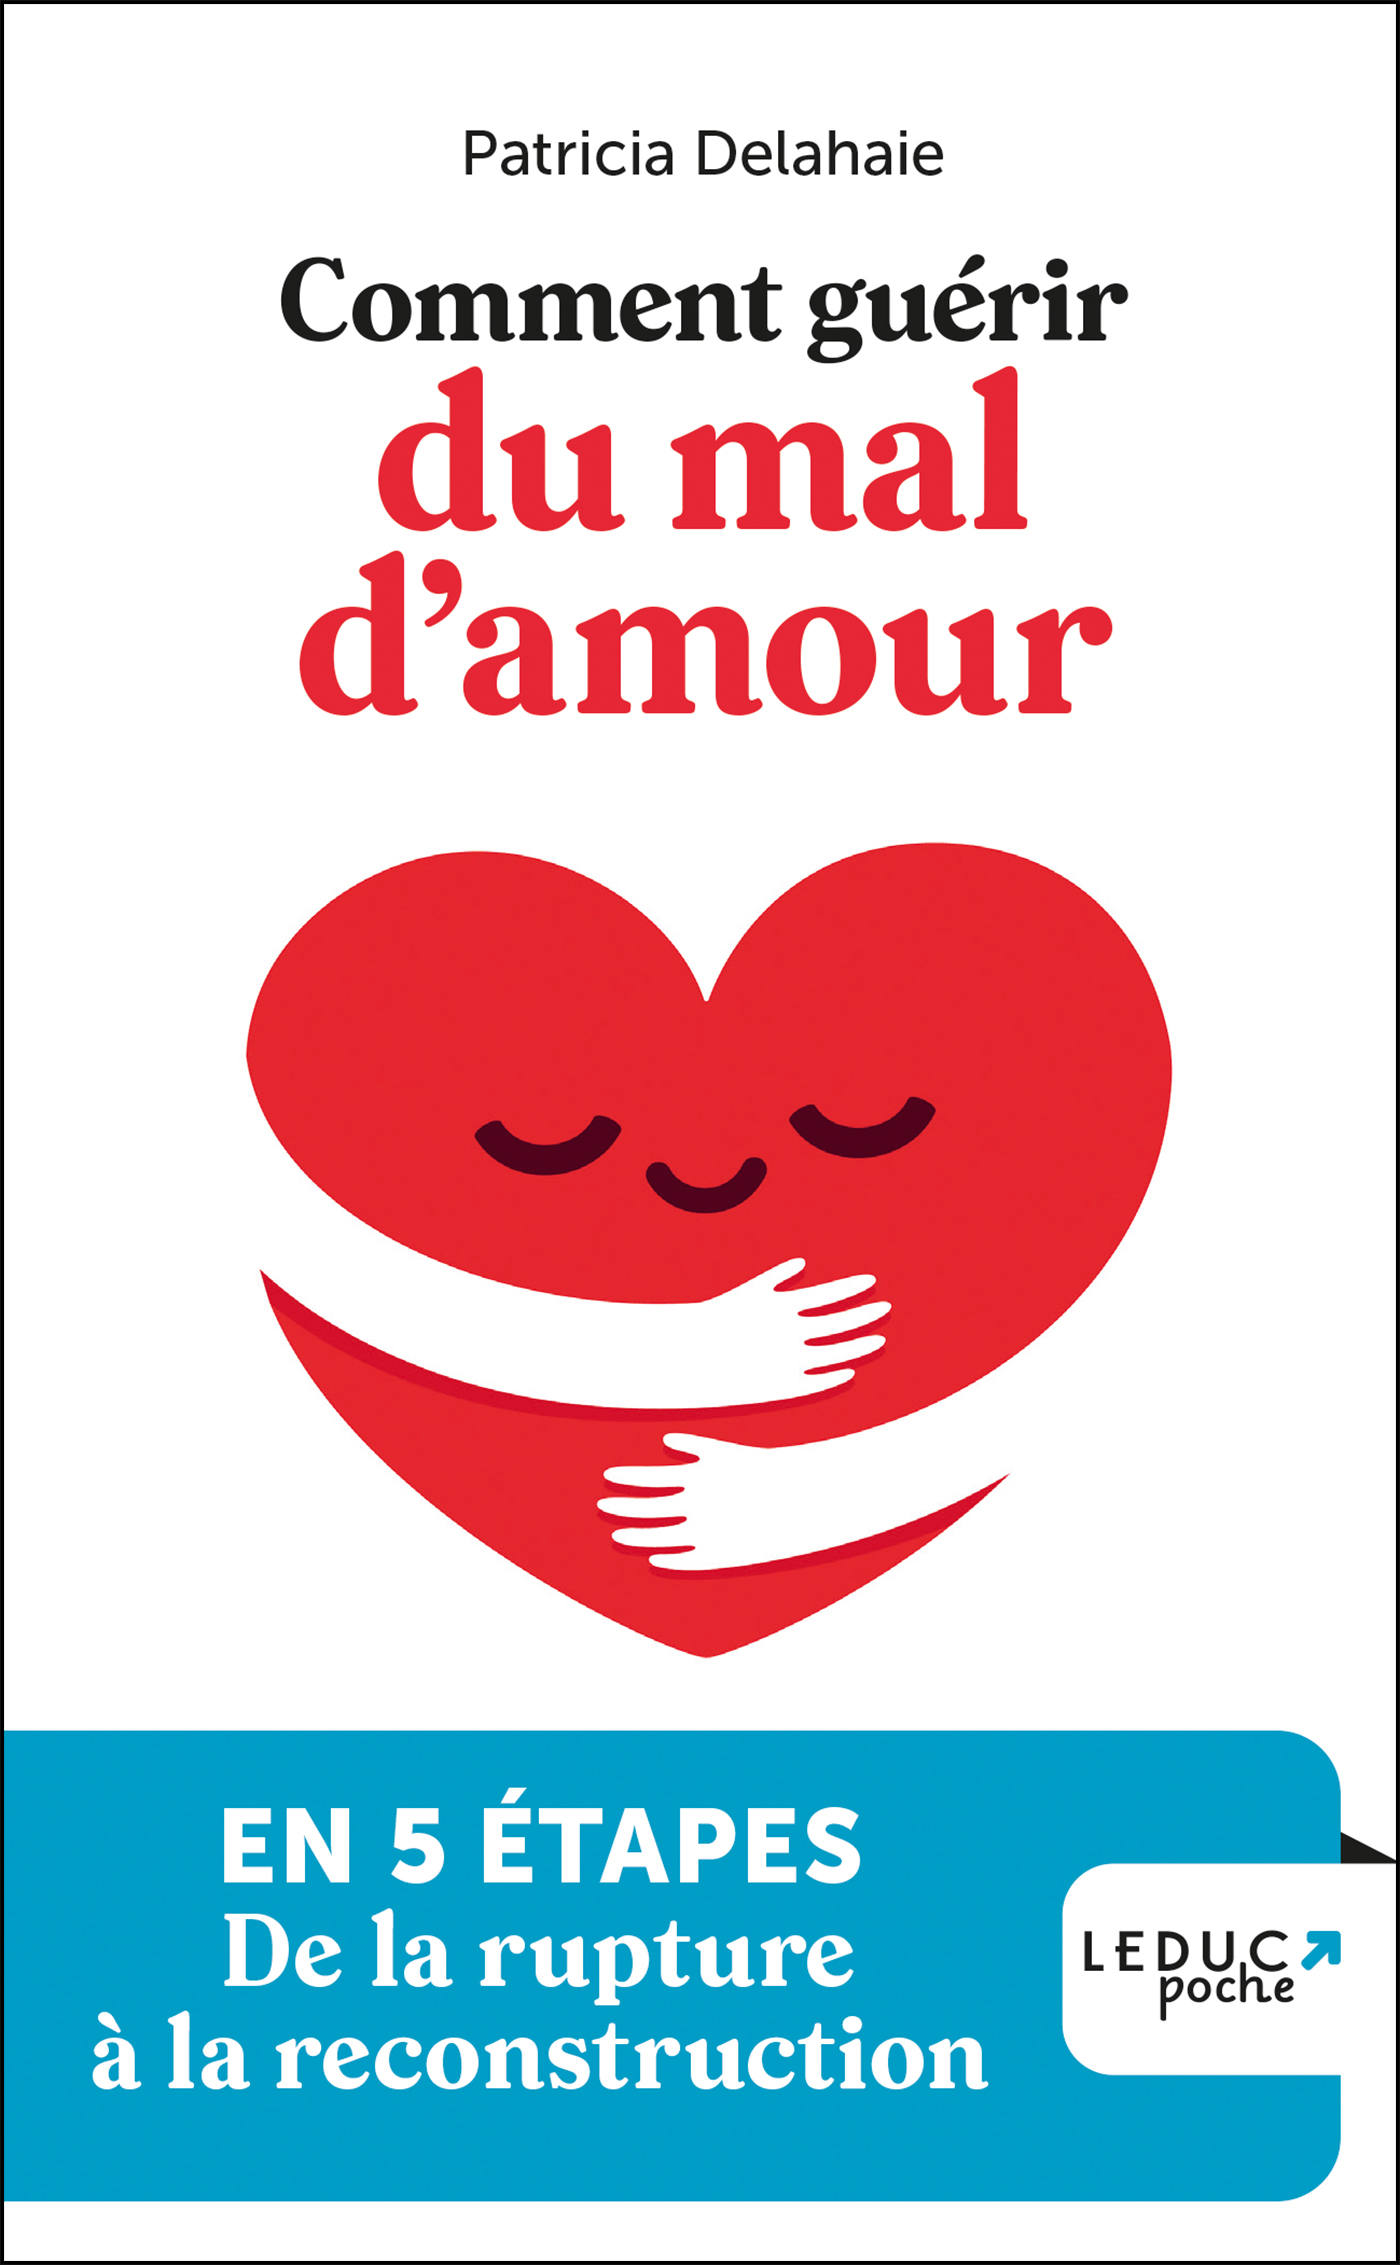 Lire pour guerir d'une peine de coeur (French Edition)